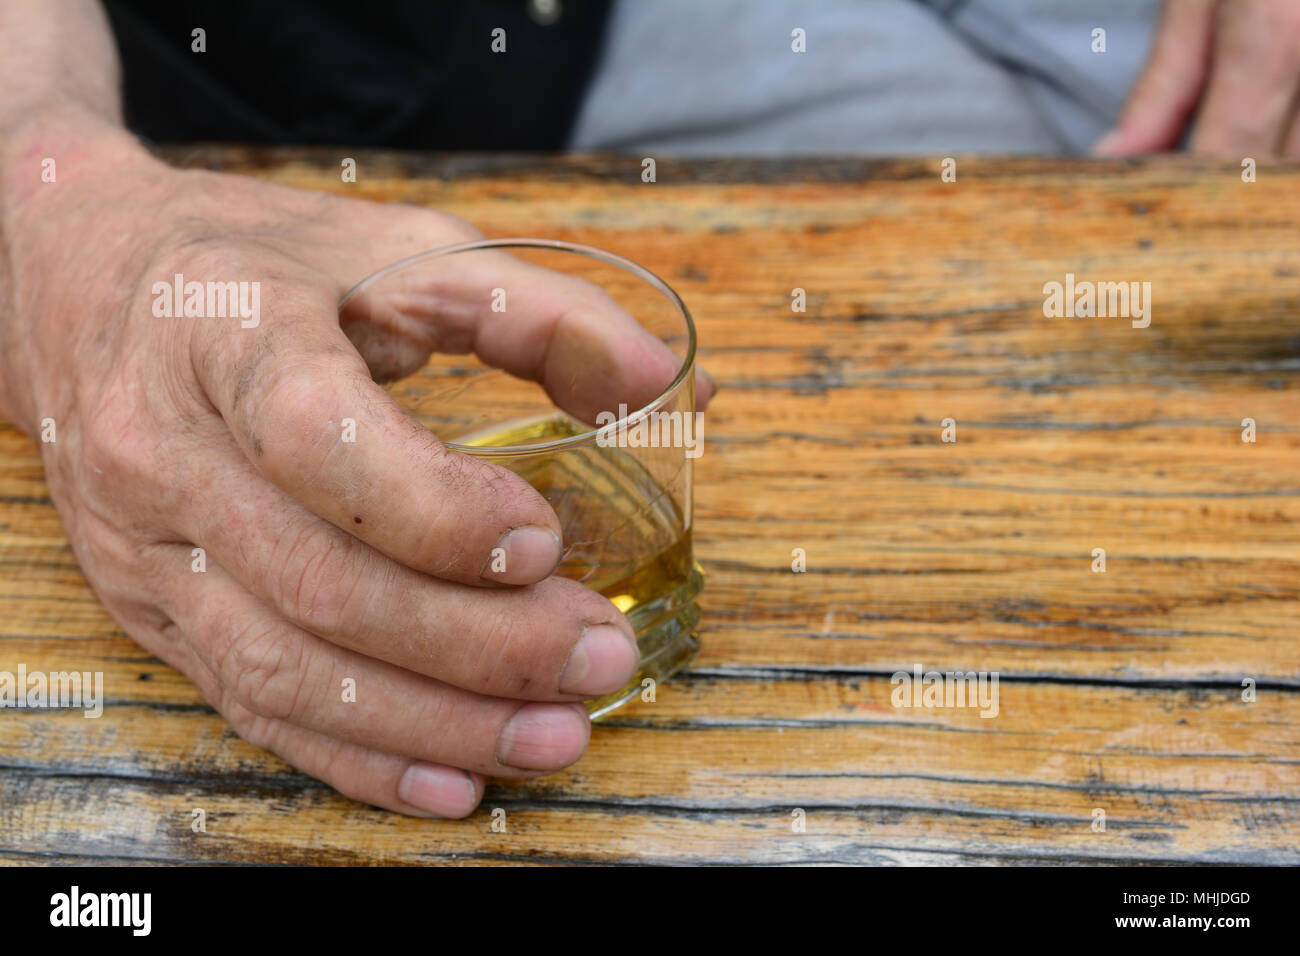 Man's hand holding glass avec de vieux, de la bonne eau-de-vie de prune sur la vieille table en chêne, grunge Banque D'Images